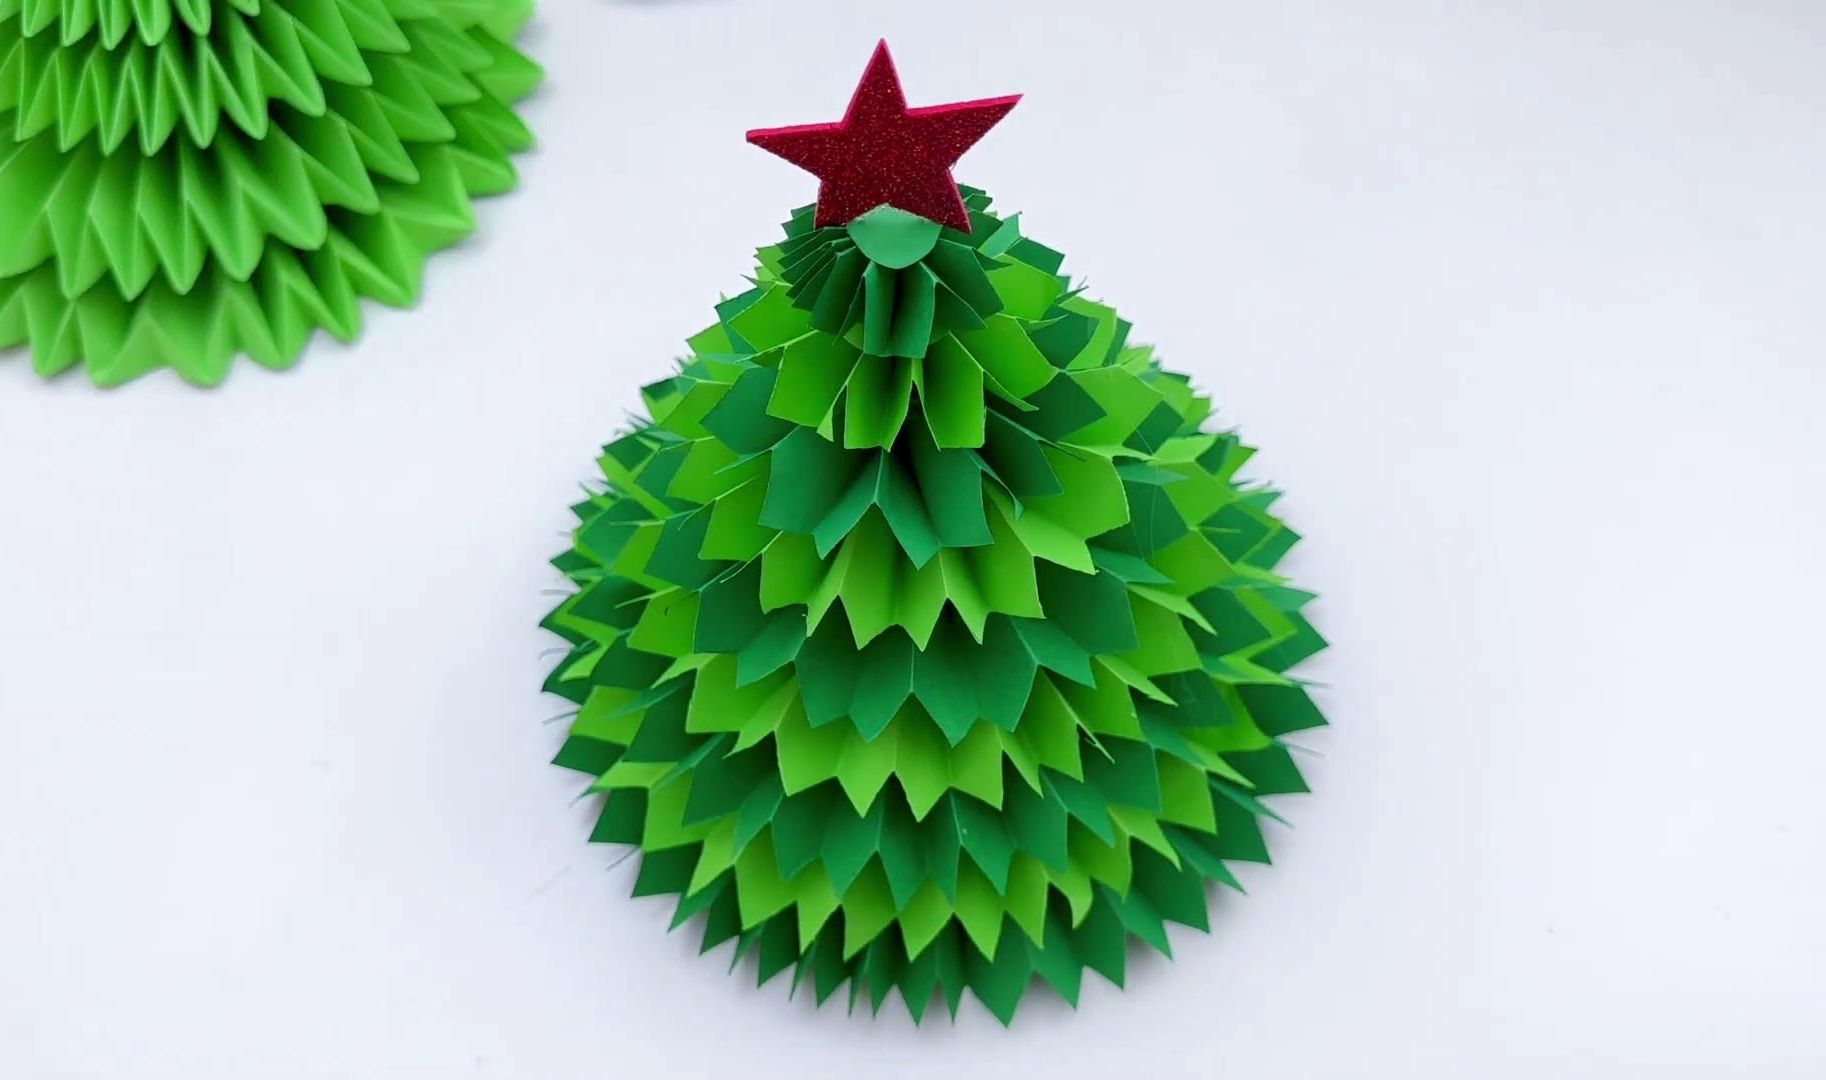 今天我们来制作一棵折纸圣诞树!